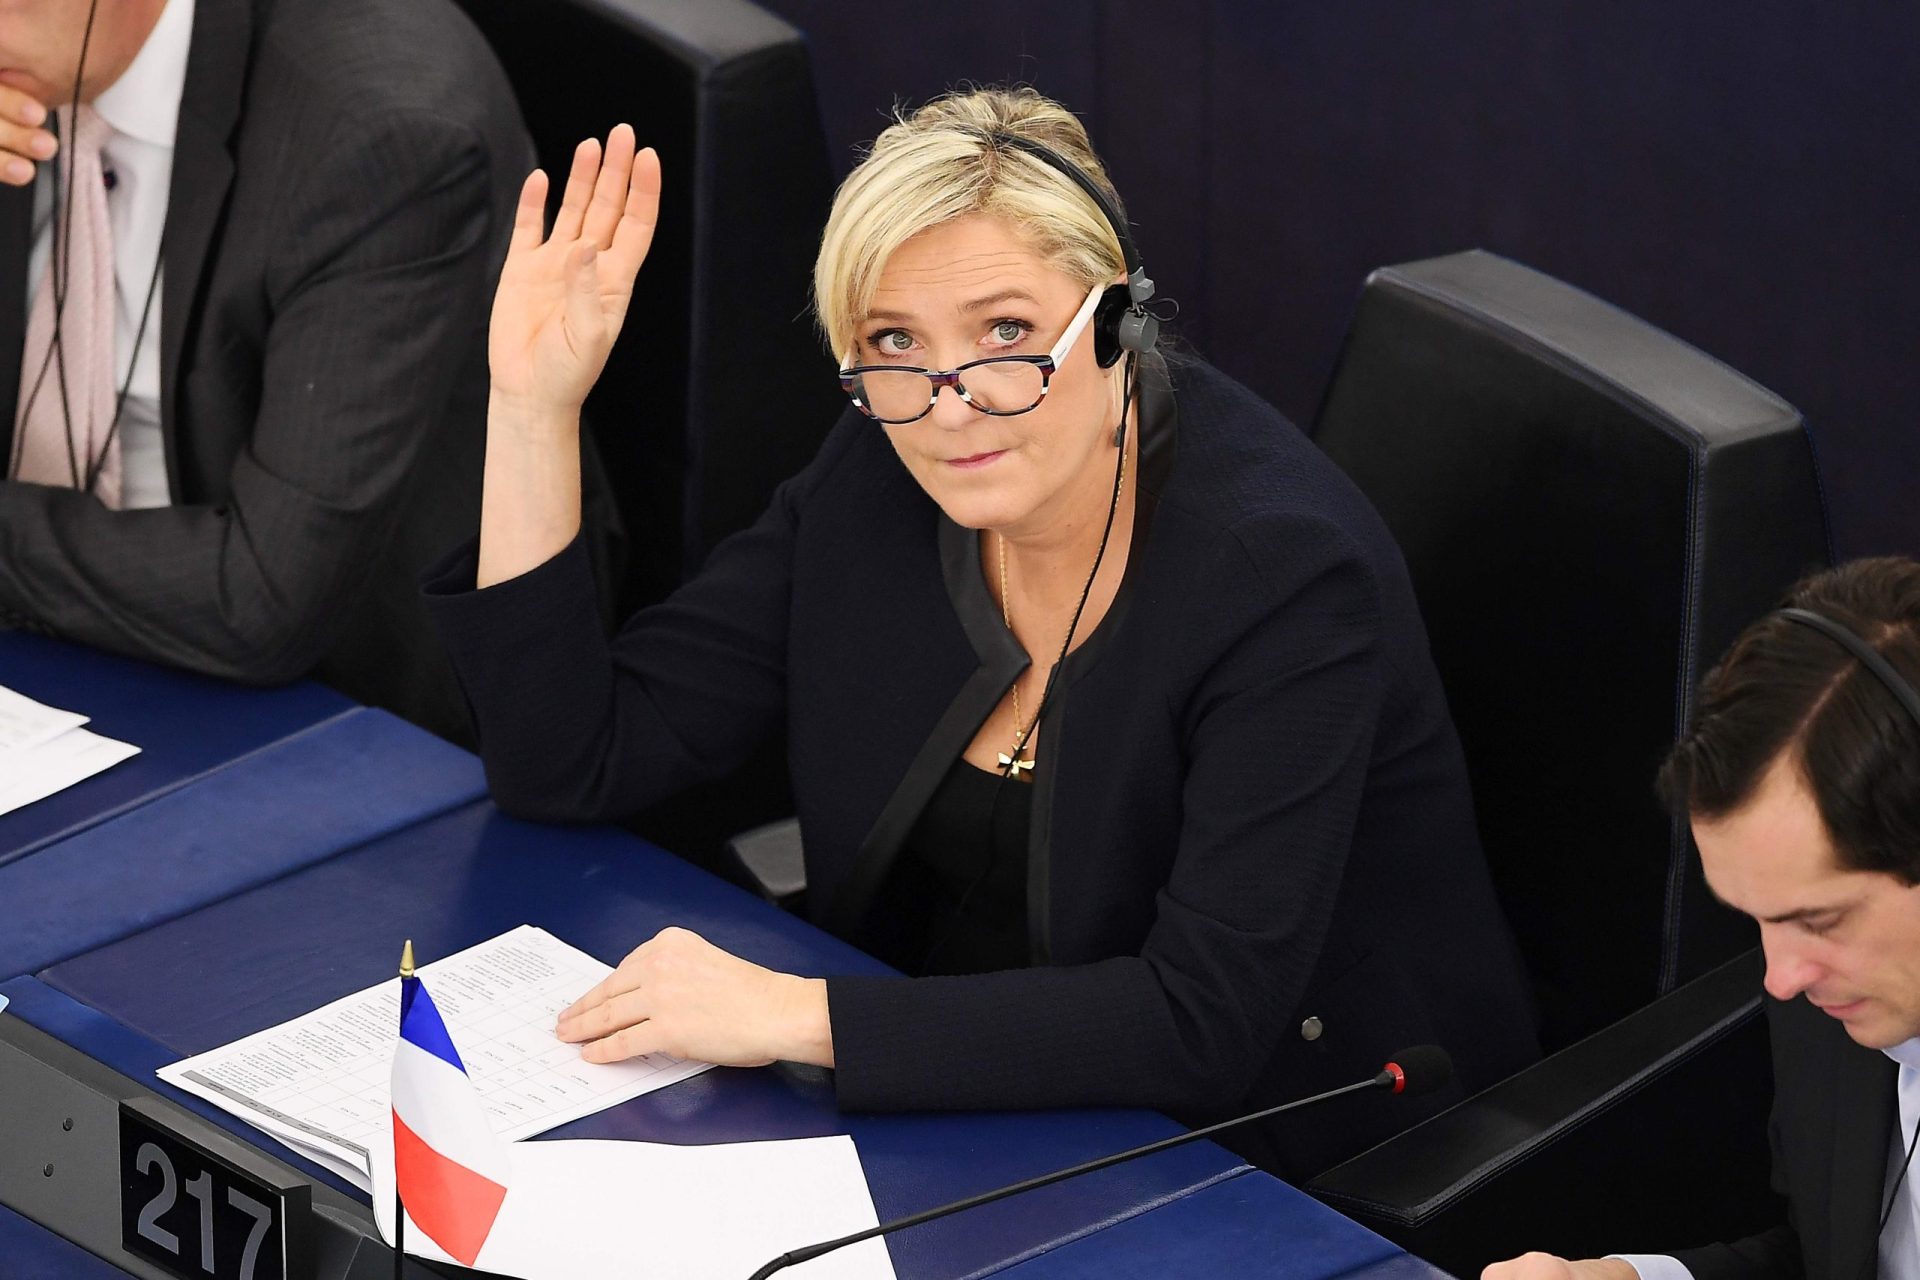 Polícia faz buscas na sede de campanha de Marine Le Pen